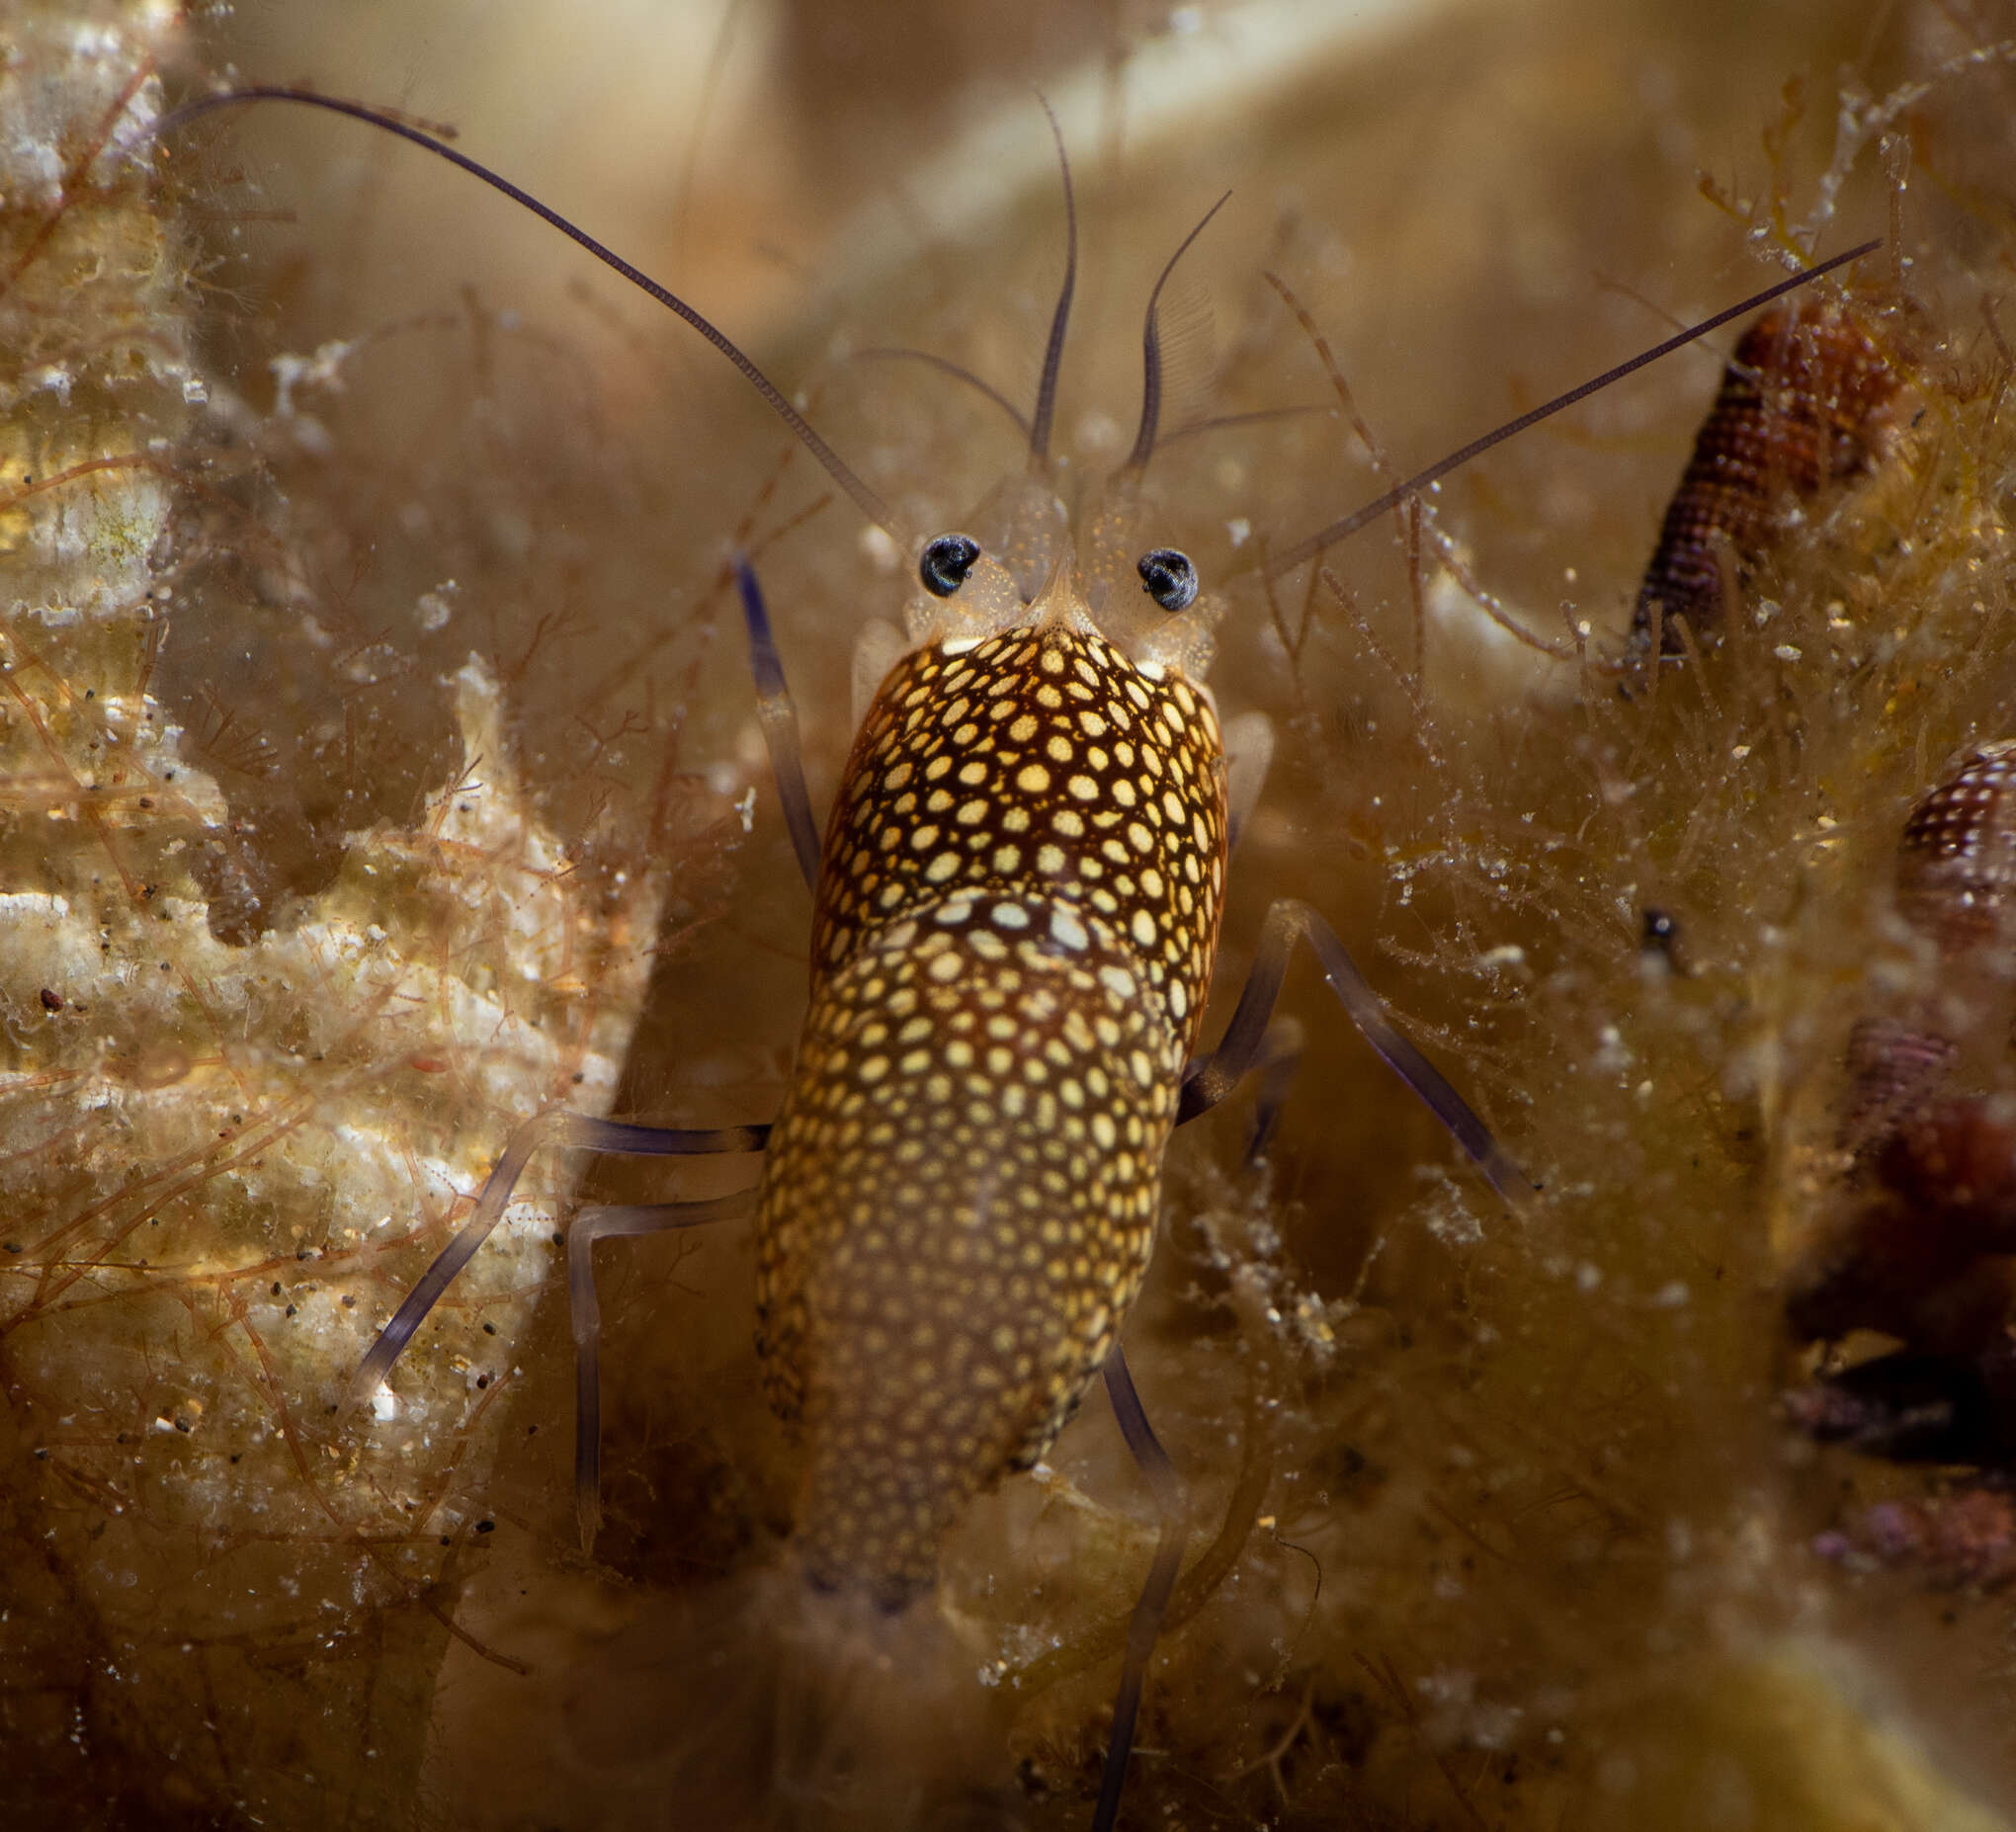 Image of golden-spotted shrimp